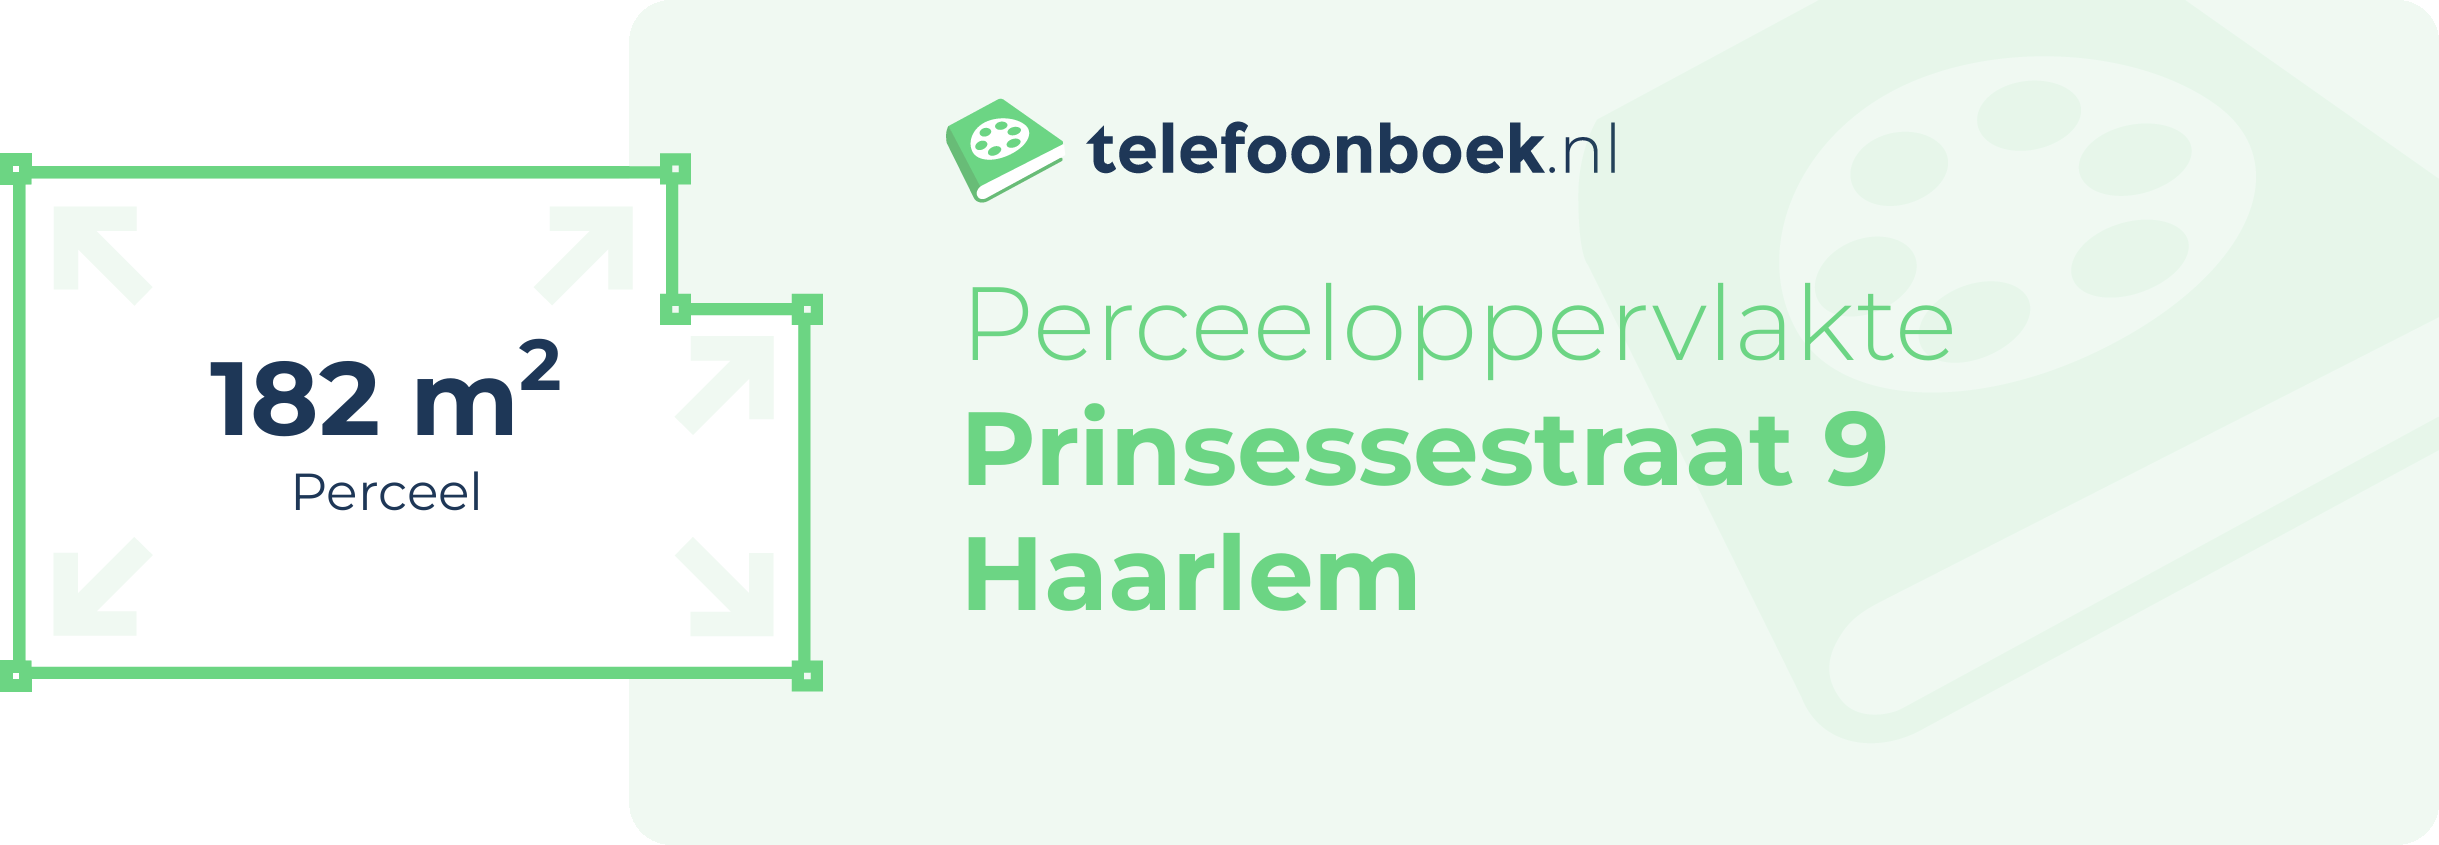 Perceeloppervlakte Prinsessestraat 9 Haarlem